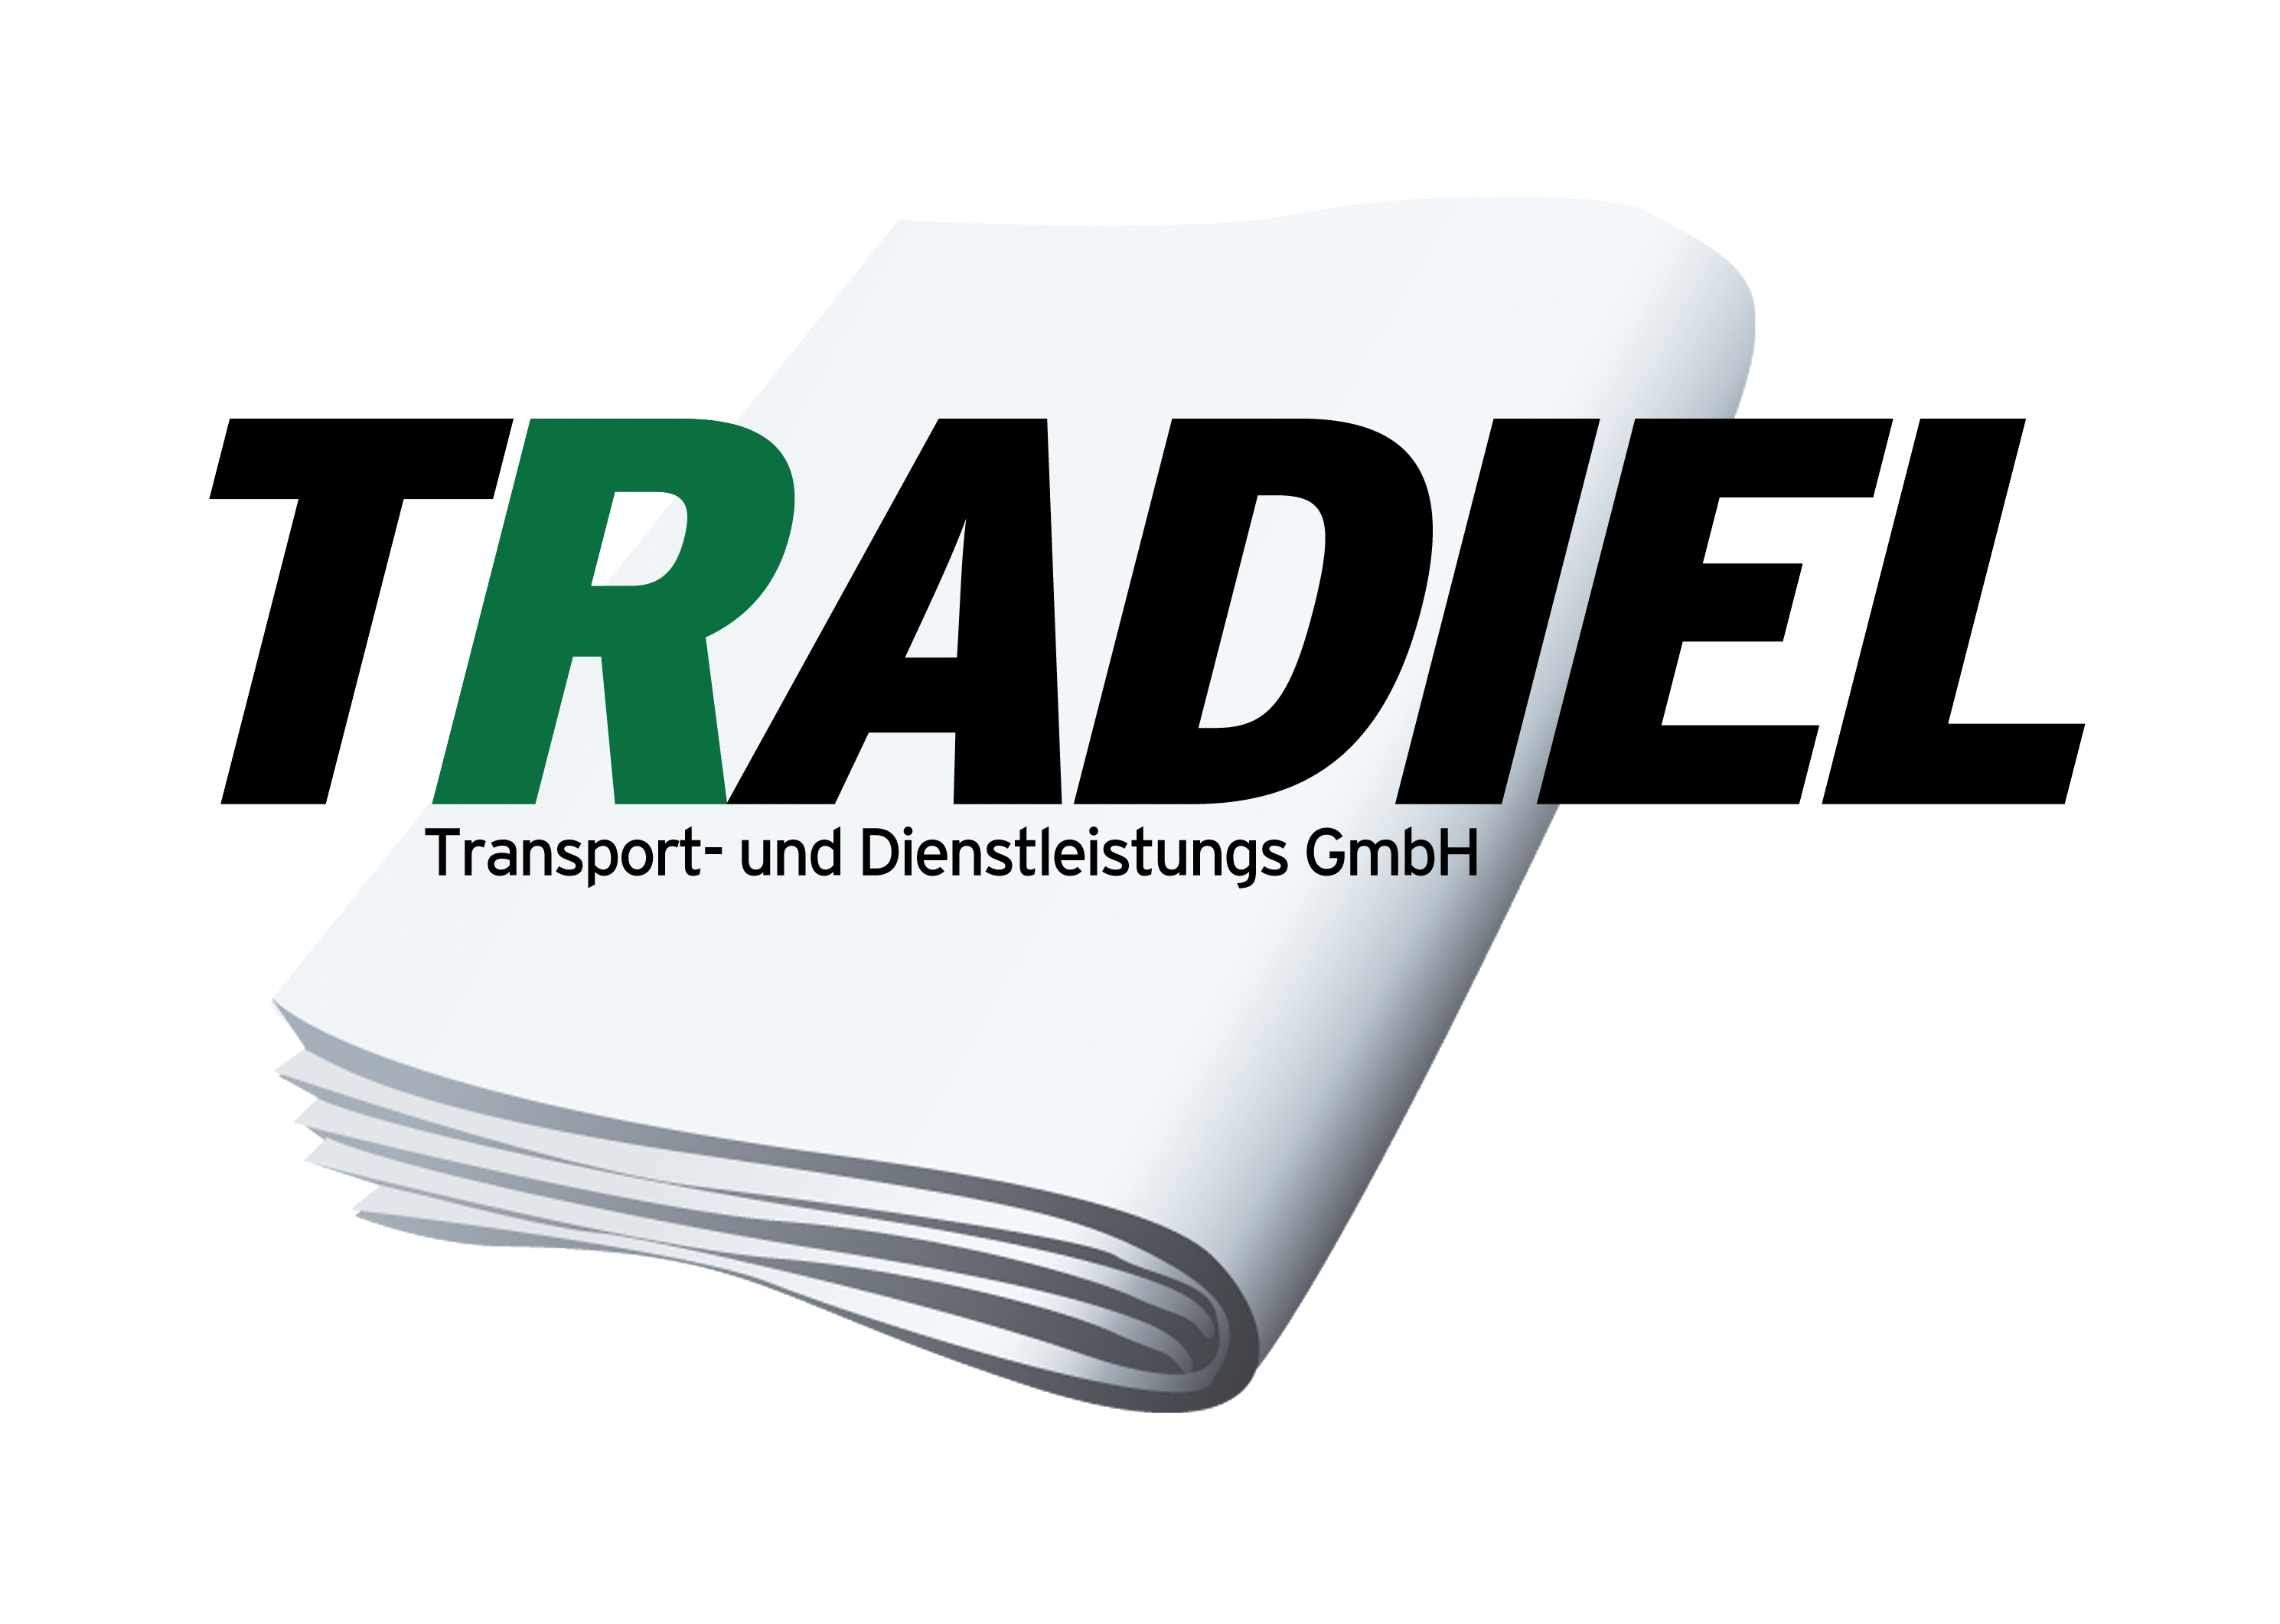 TRADIEL Transport- und Dienstleistungs-GmbH